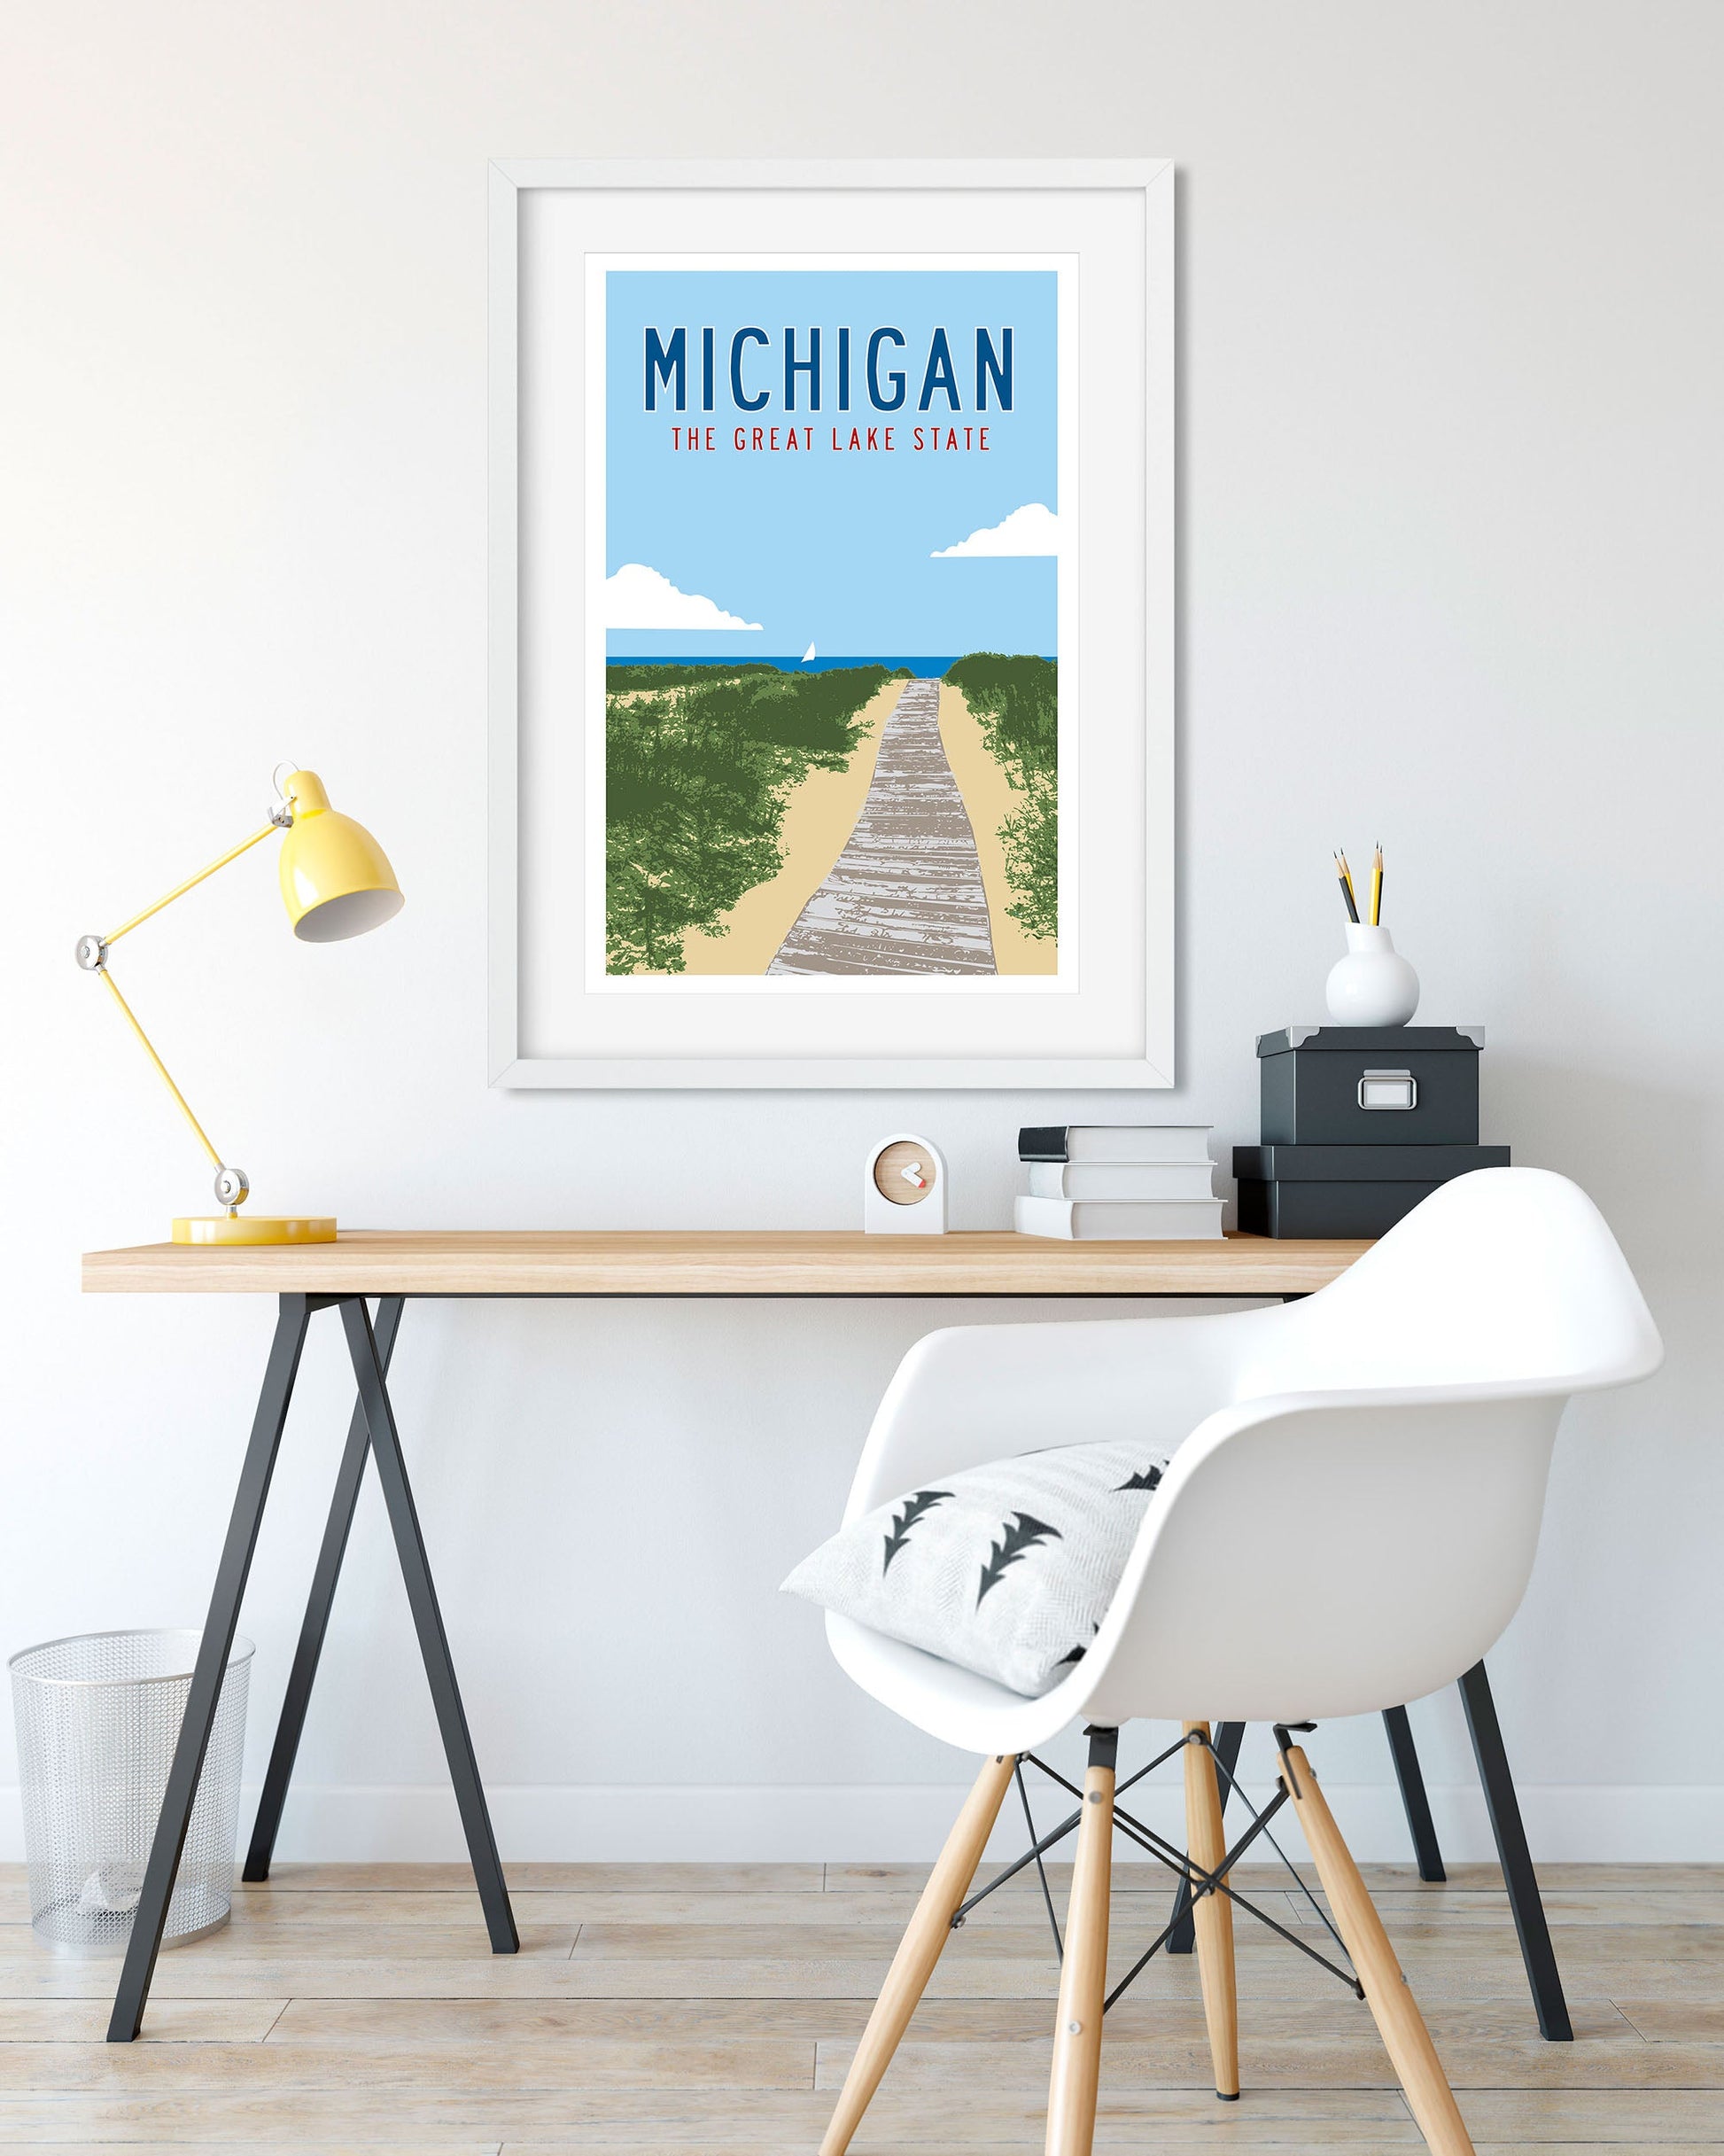 Vintage Michigan Travel Poster art hanging above a desk - Transit Design